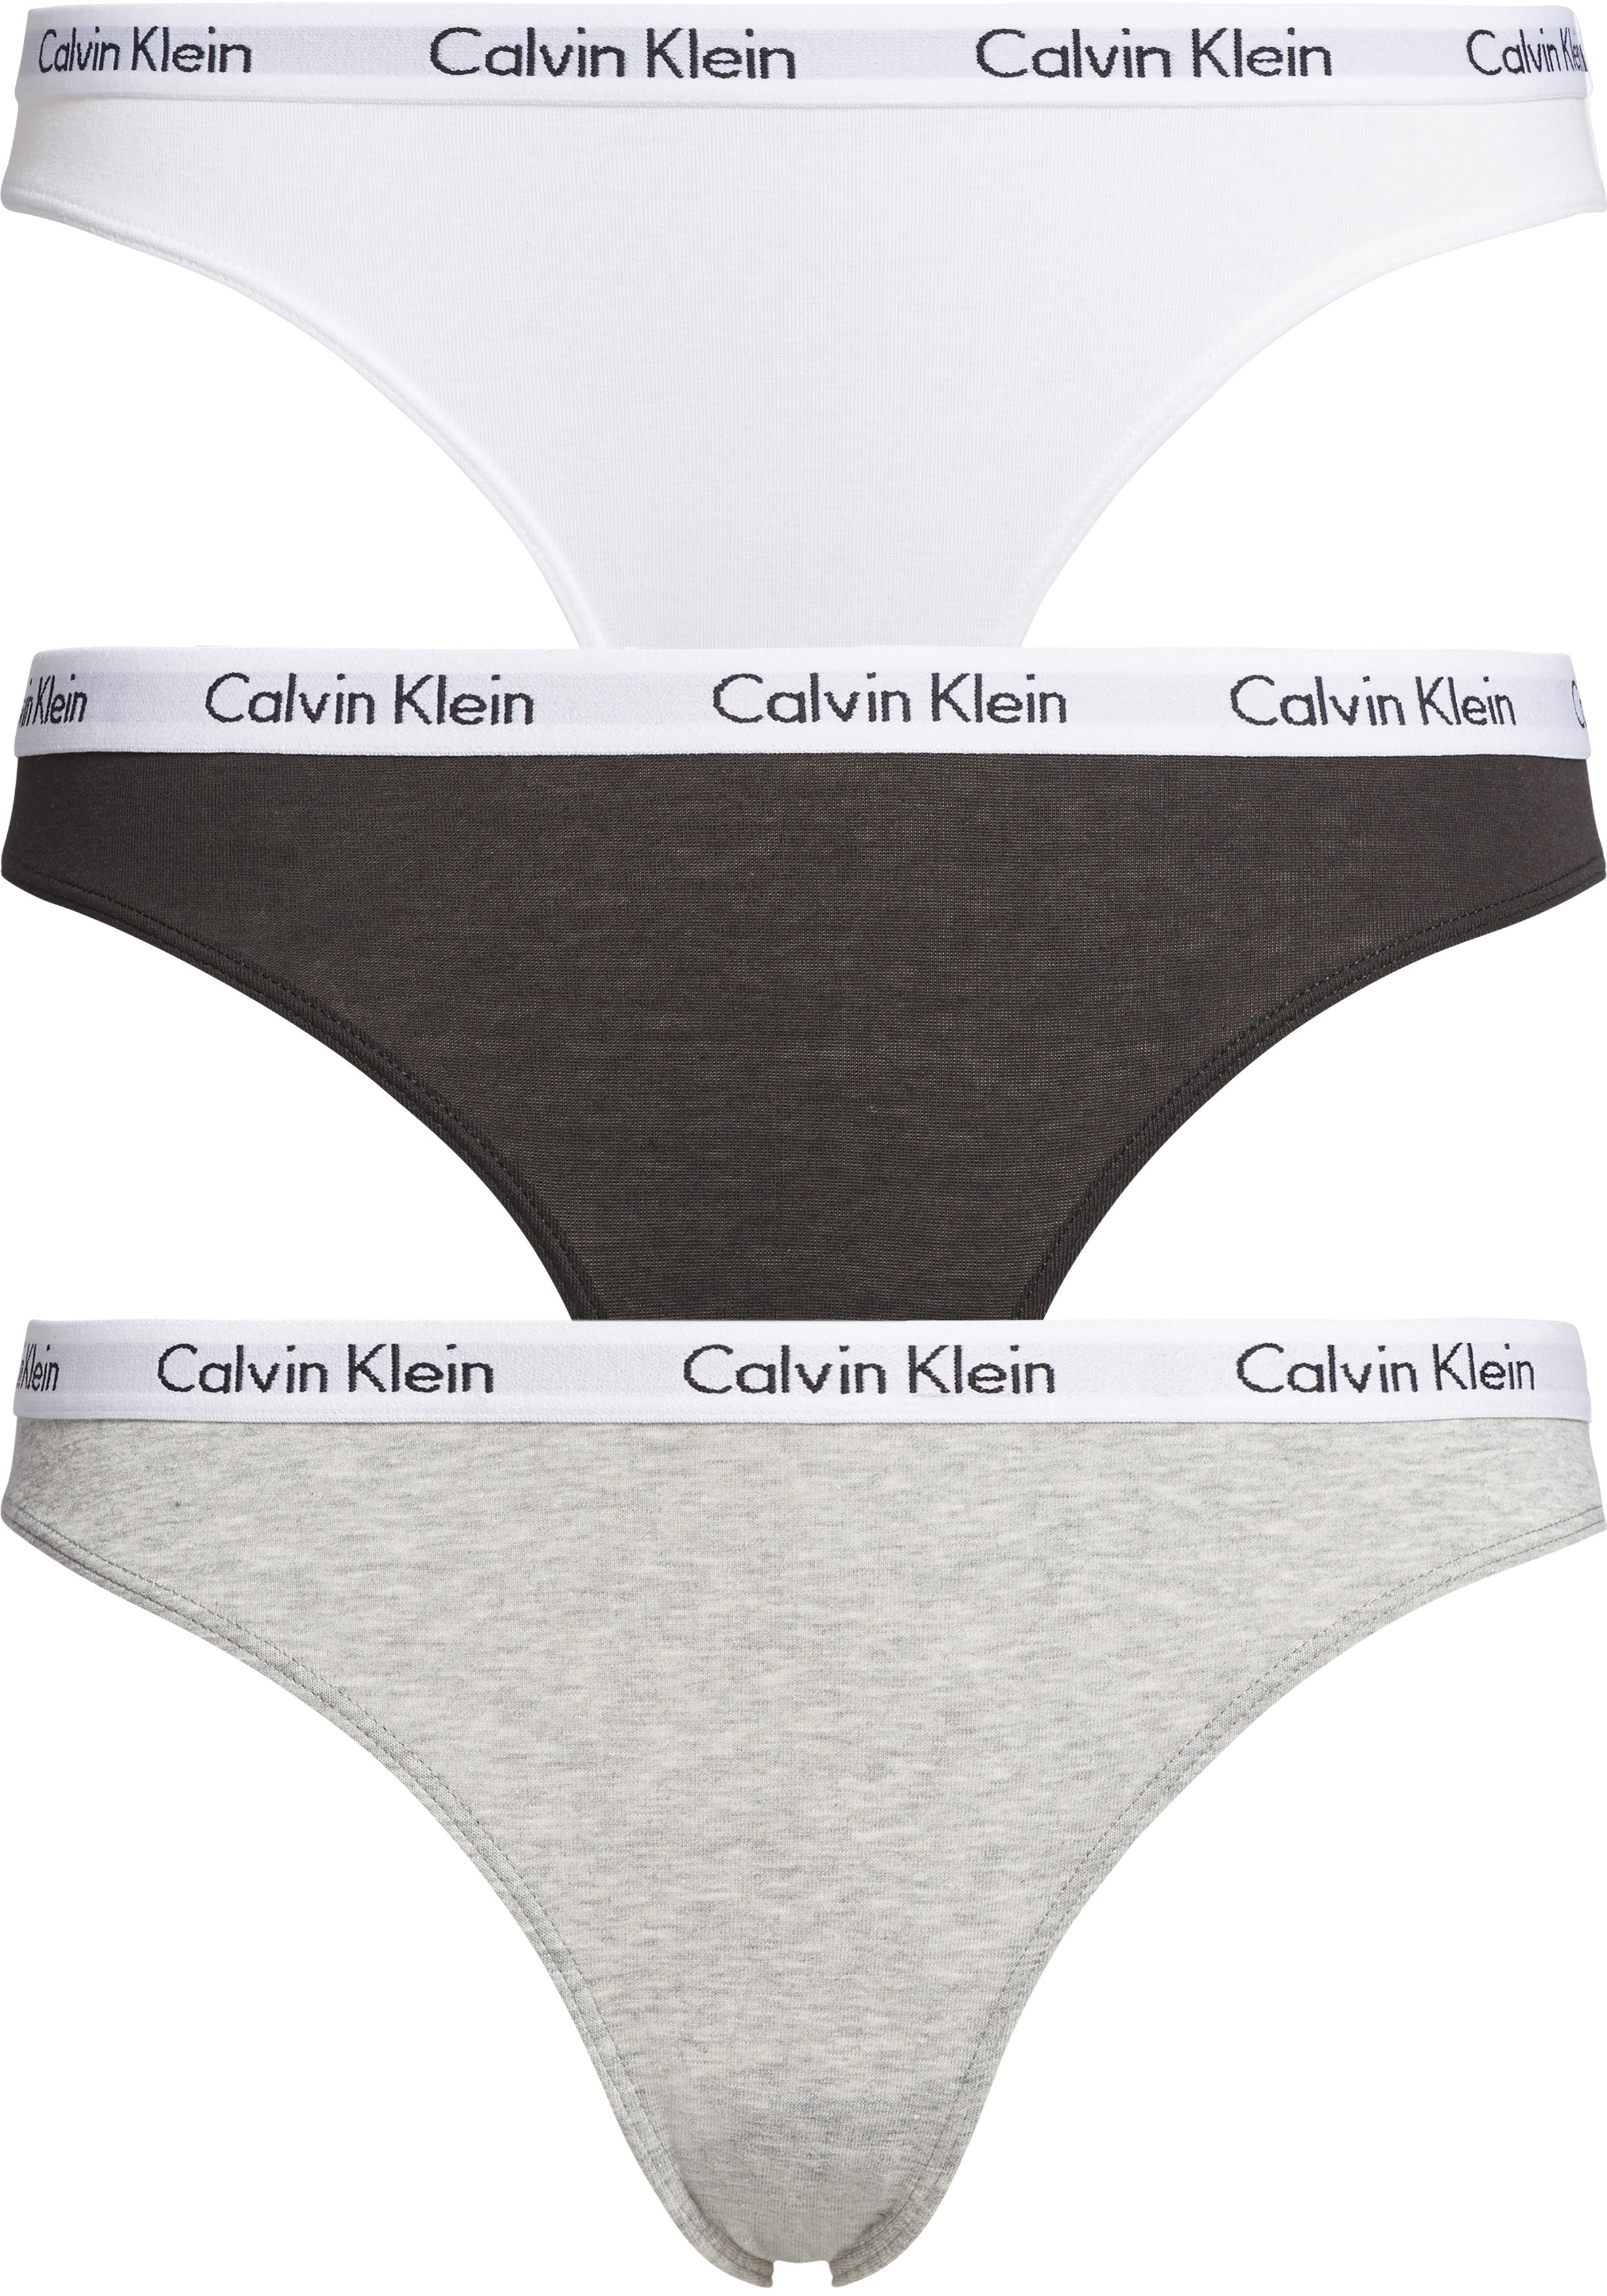 Vergemakkelijken zelfmoord satelliet Calvin Klein dames slips (3-pack), zwart, wit en grijs - Shop de nieuwste  voorjaarsmode